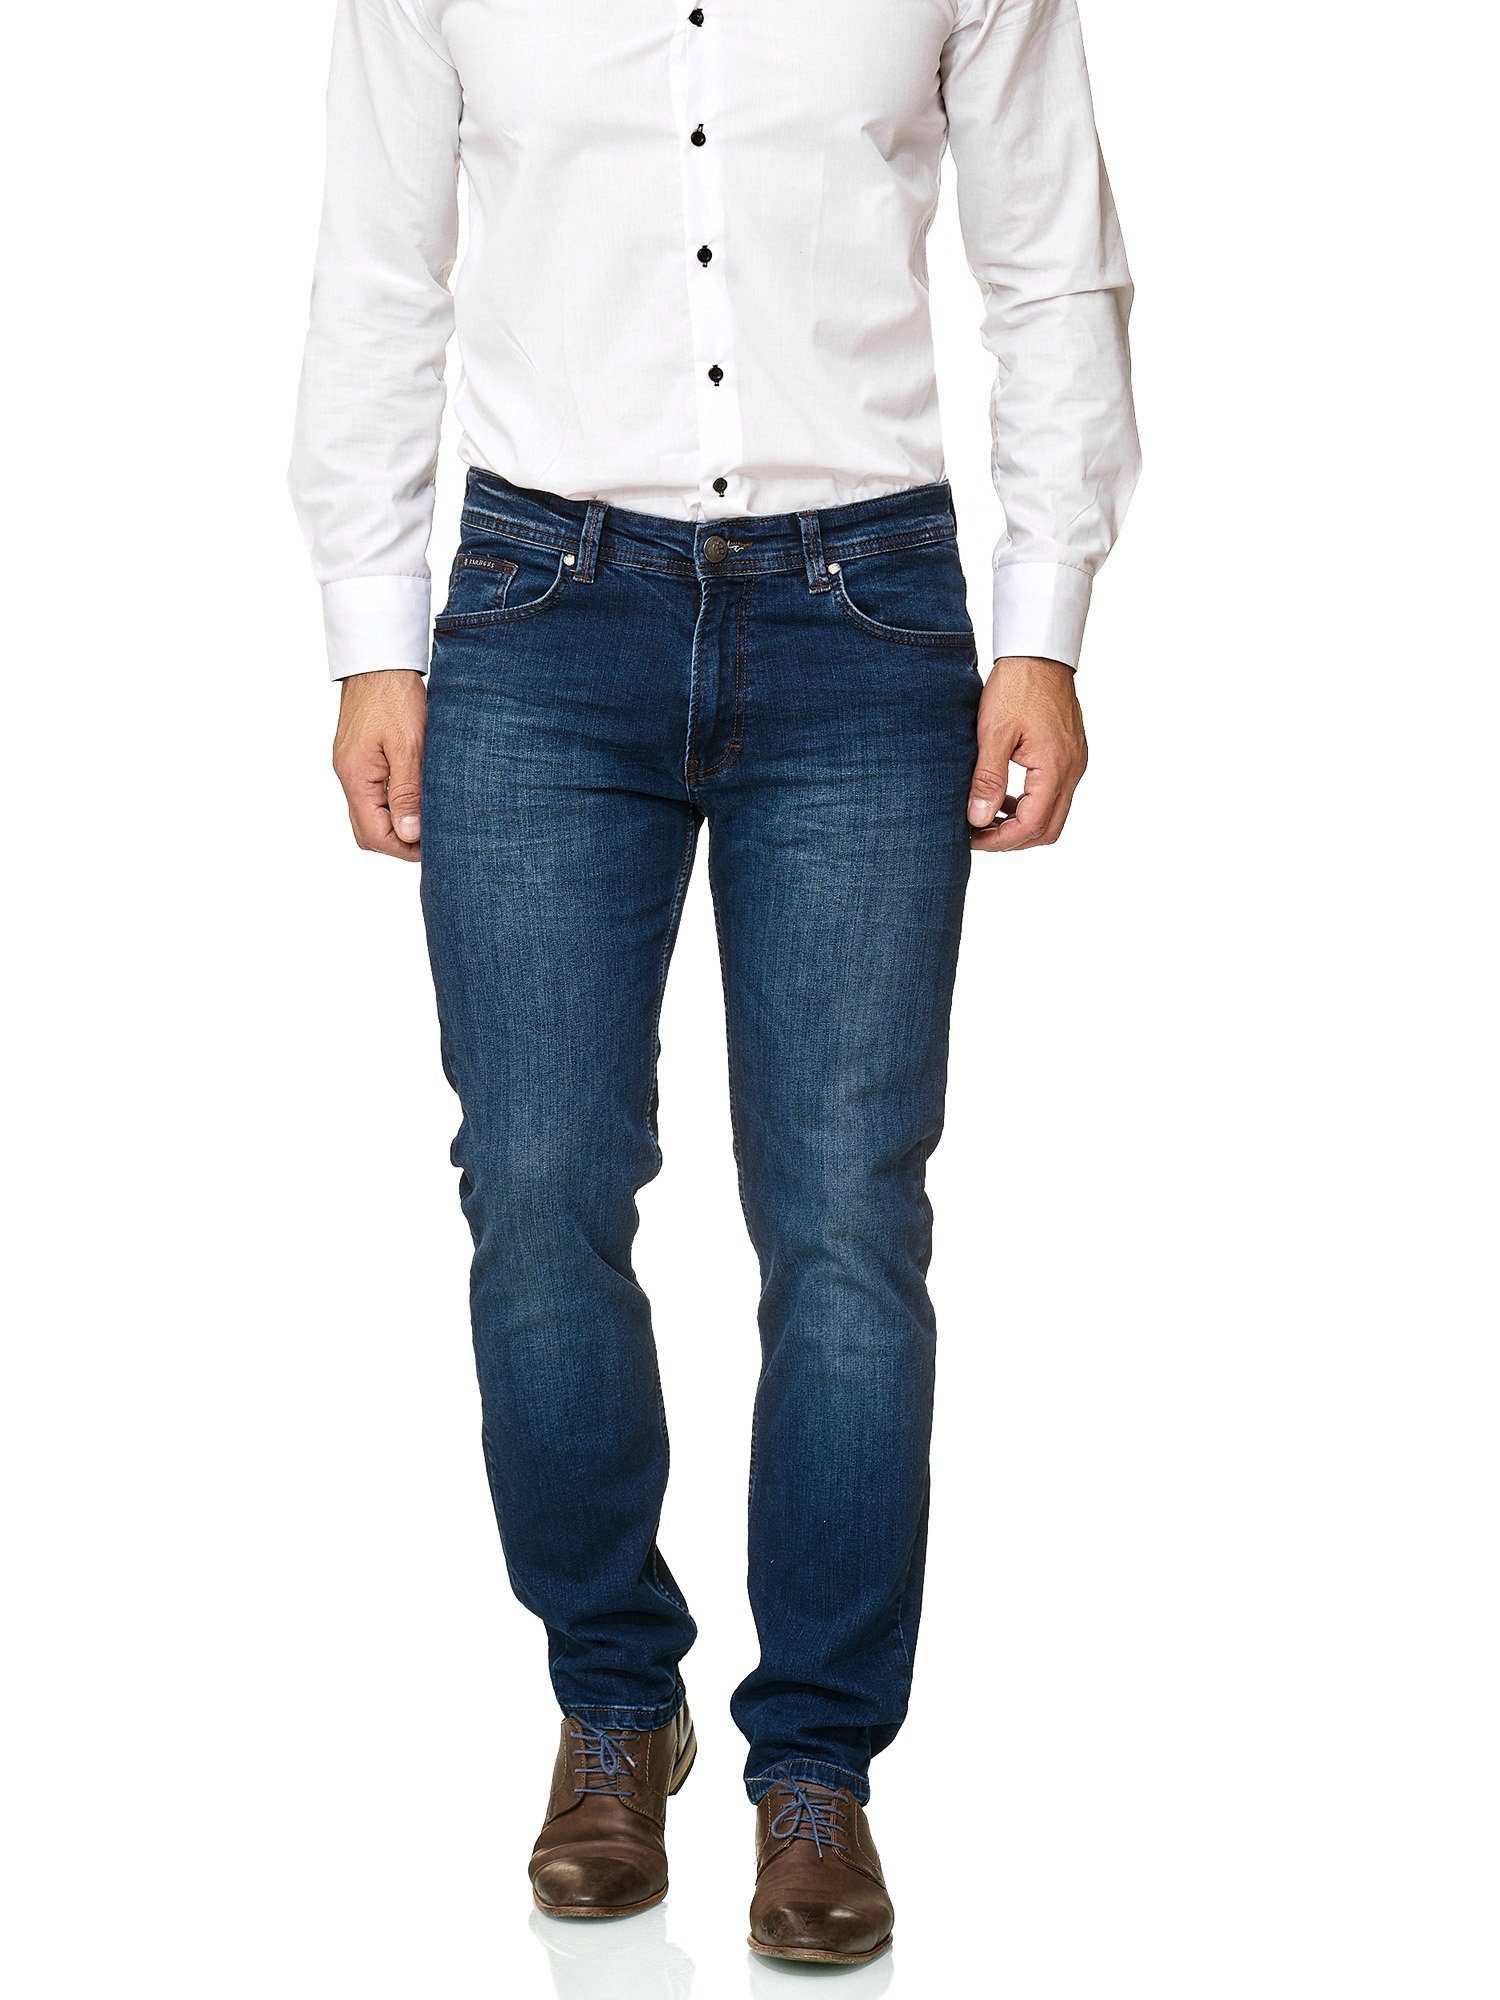 BARBONS 5-Pocket-Jeans Herren Fit Regular 5-Pocket 02-Blau Design